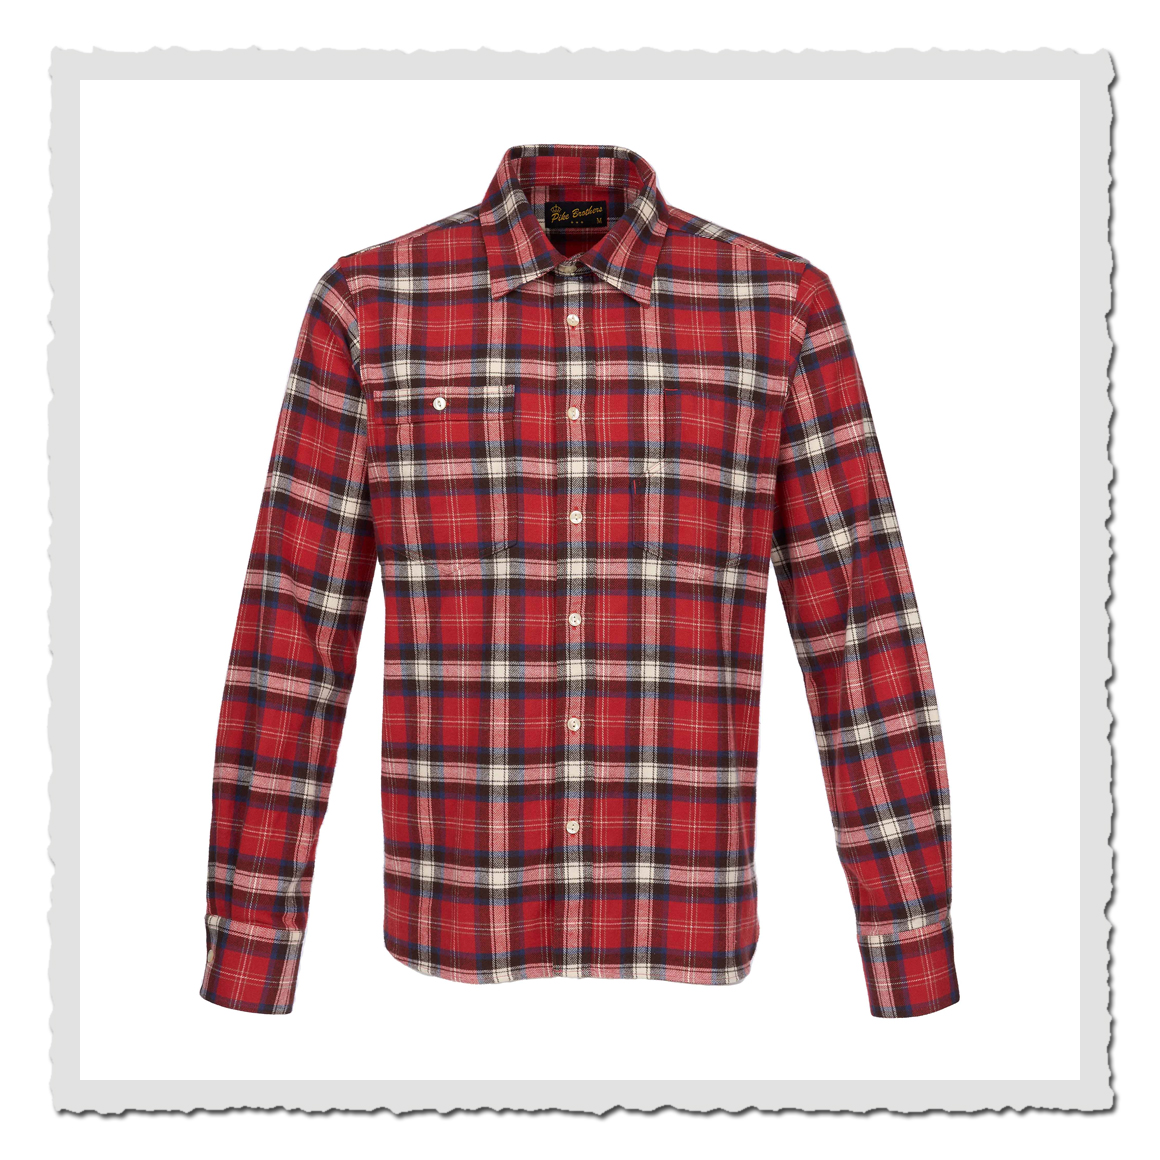 1937 Roamer Shirt red flannel